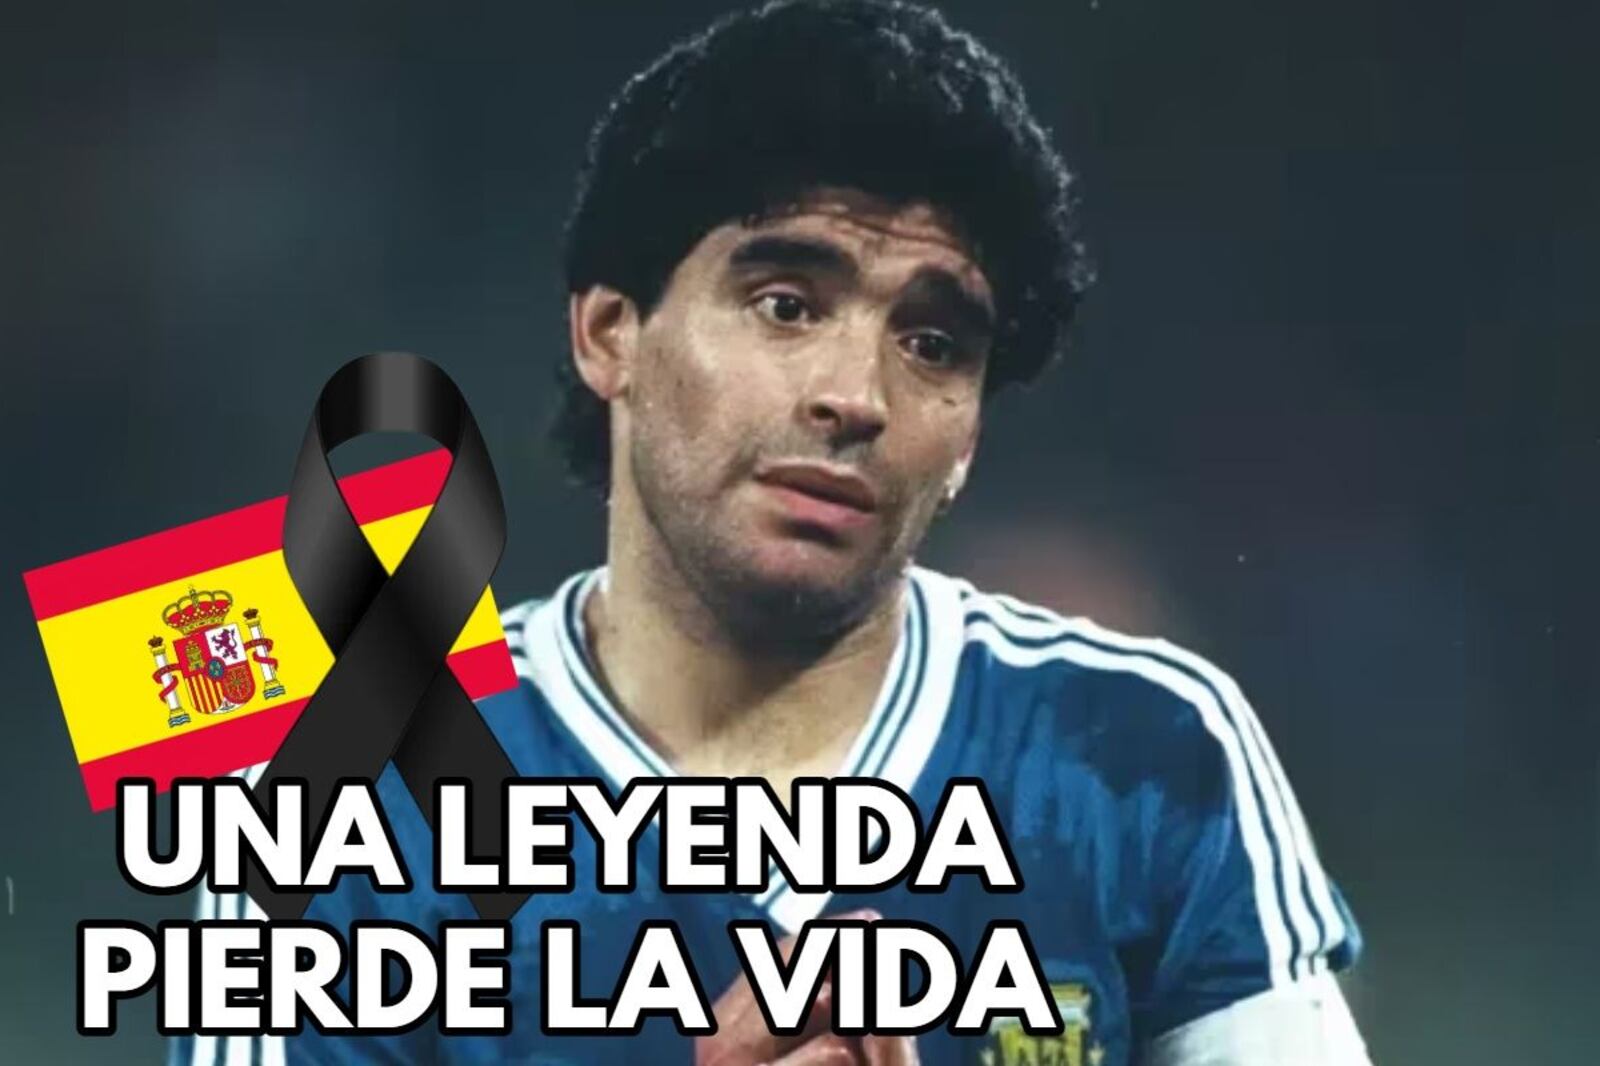 Salvó la carrera de Maradona, fue leyenda en España, ahora pierde la vida